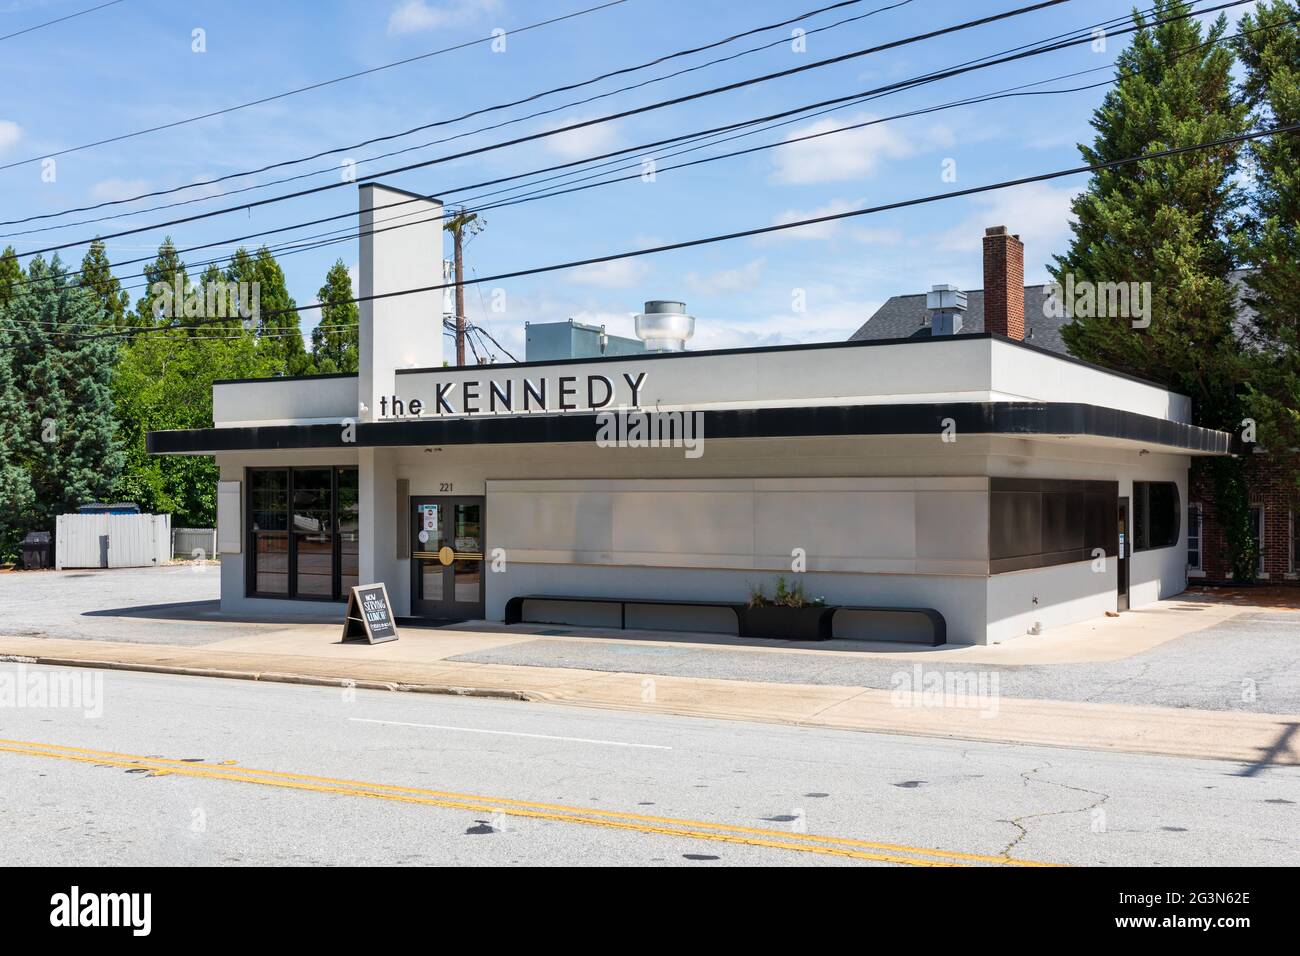 SPARTANBURG, SC, USA-13 JUNE 2021: Das Kennedy ist ein 'American Fare' Restaurant in der Innenstadt. Gebäude und Schild. Horizontales Bild. Stockfoto